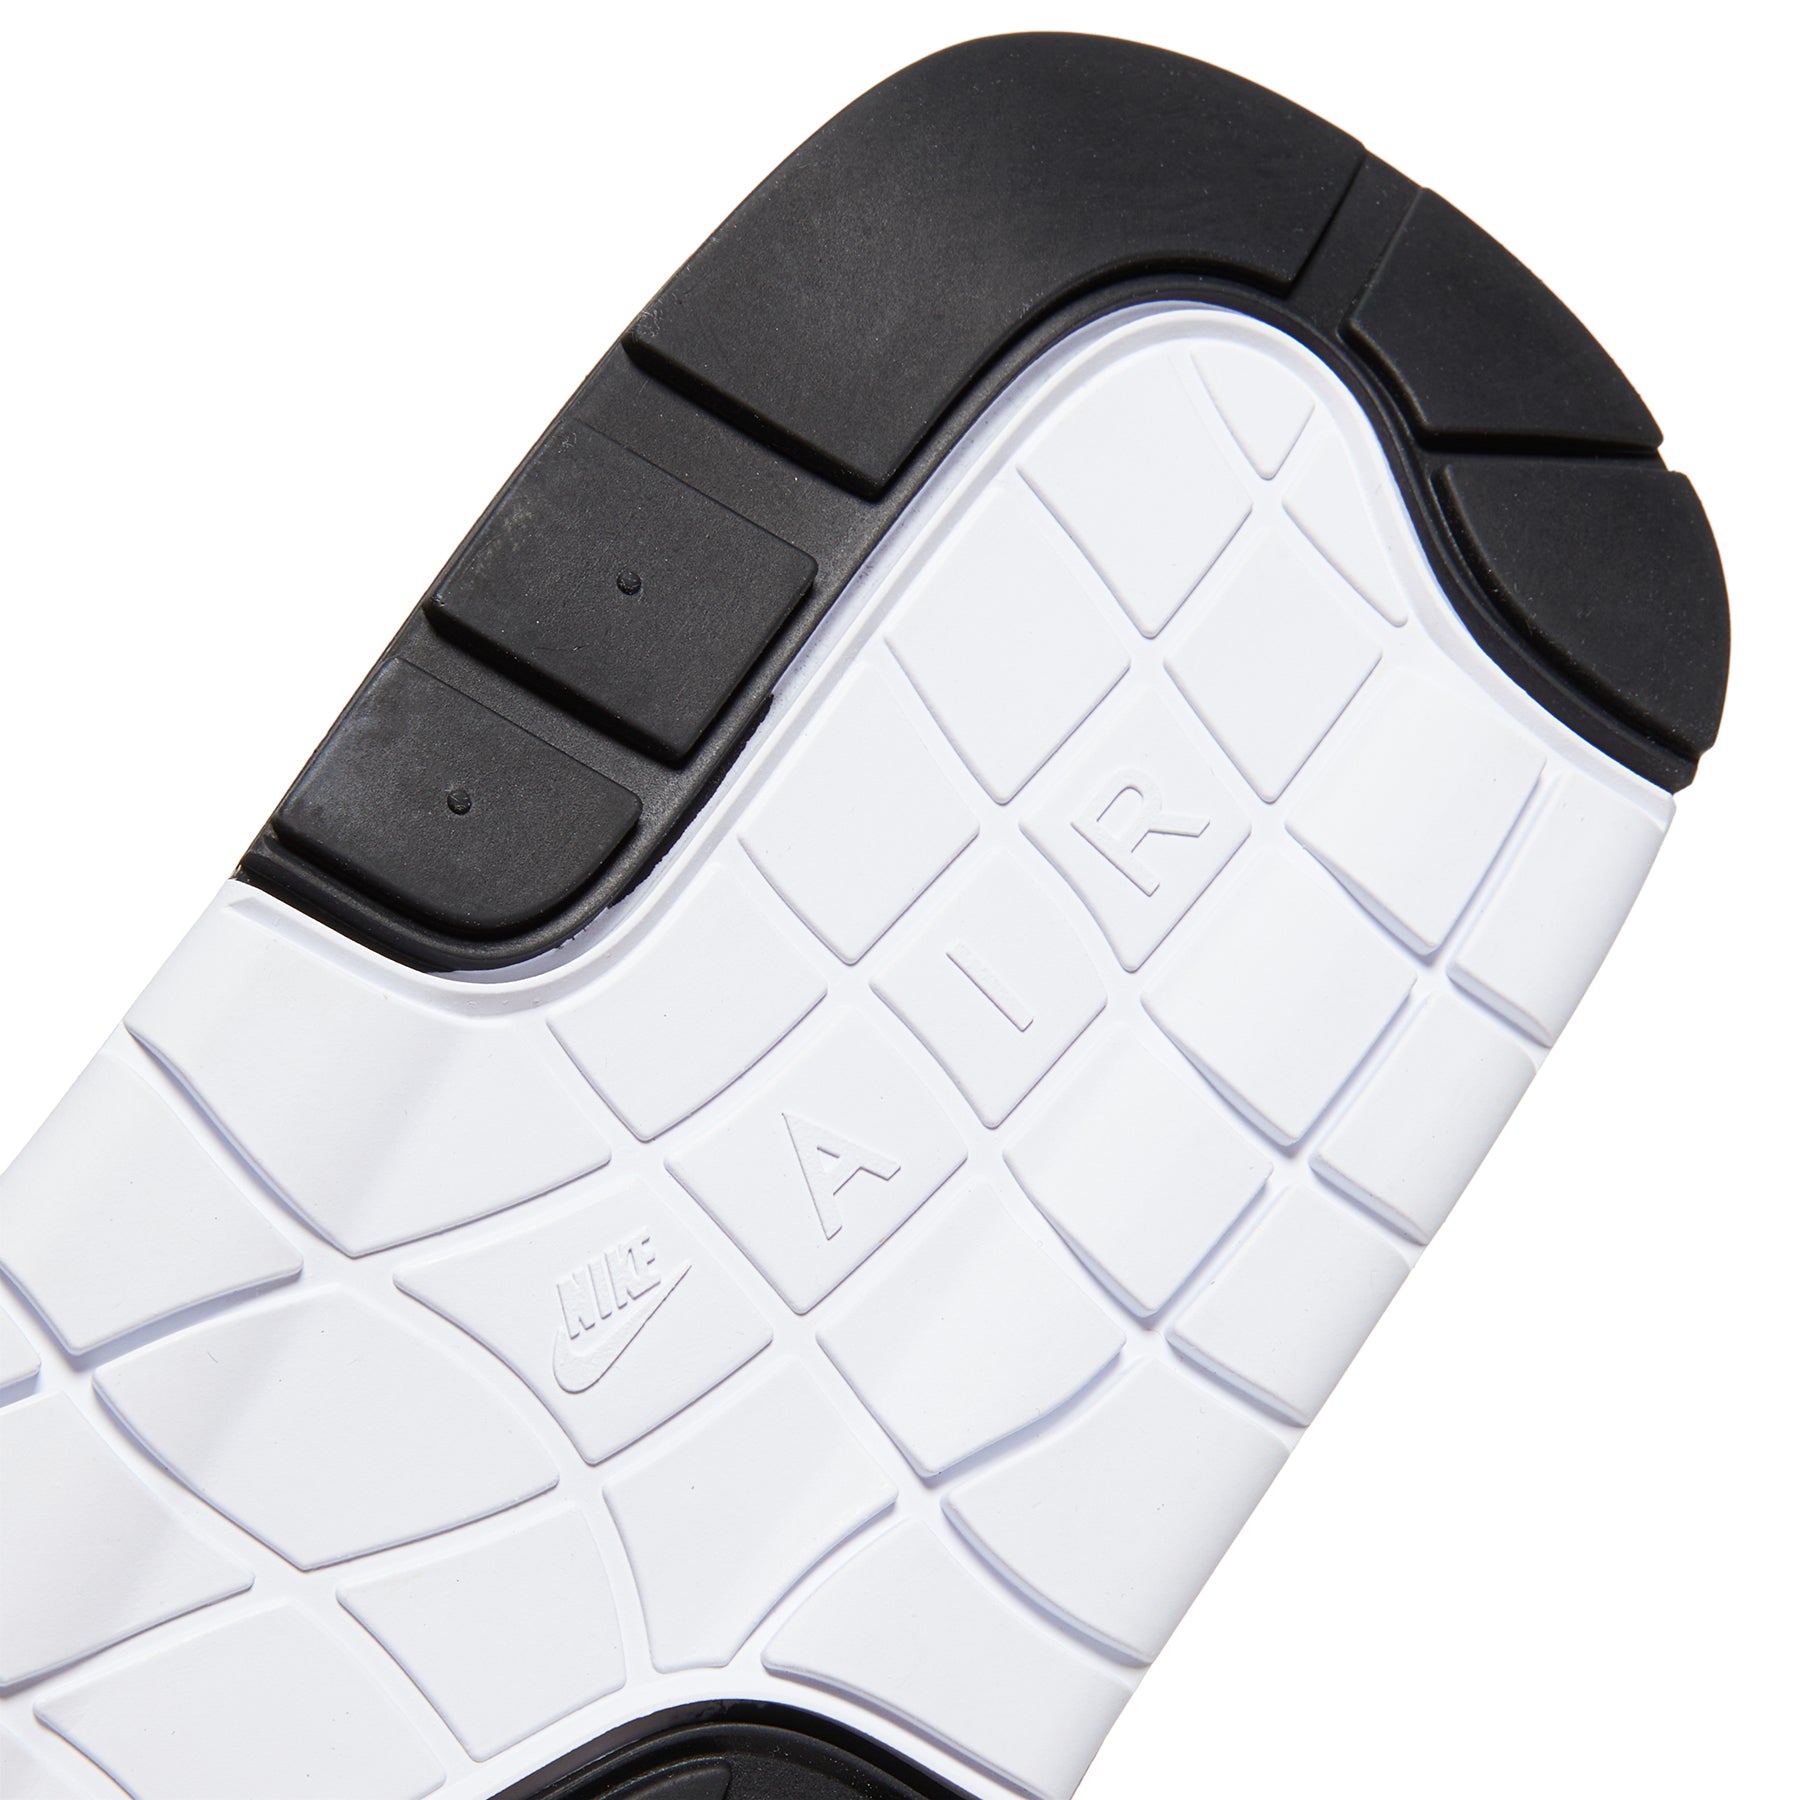 Men's shoes Nike Air Max 1 '86 Premium White/ Obsidian-Lt Neutral